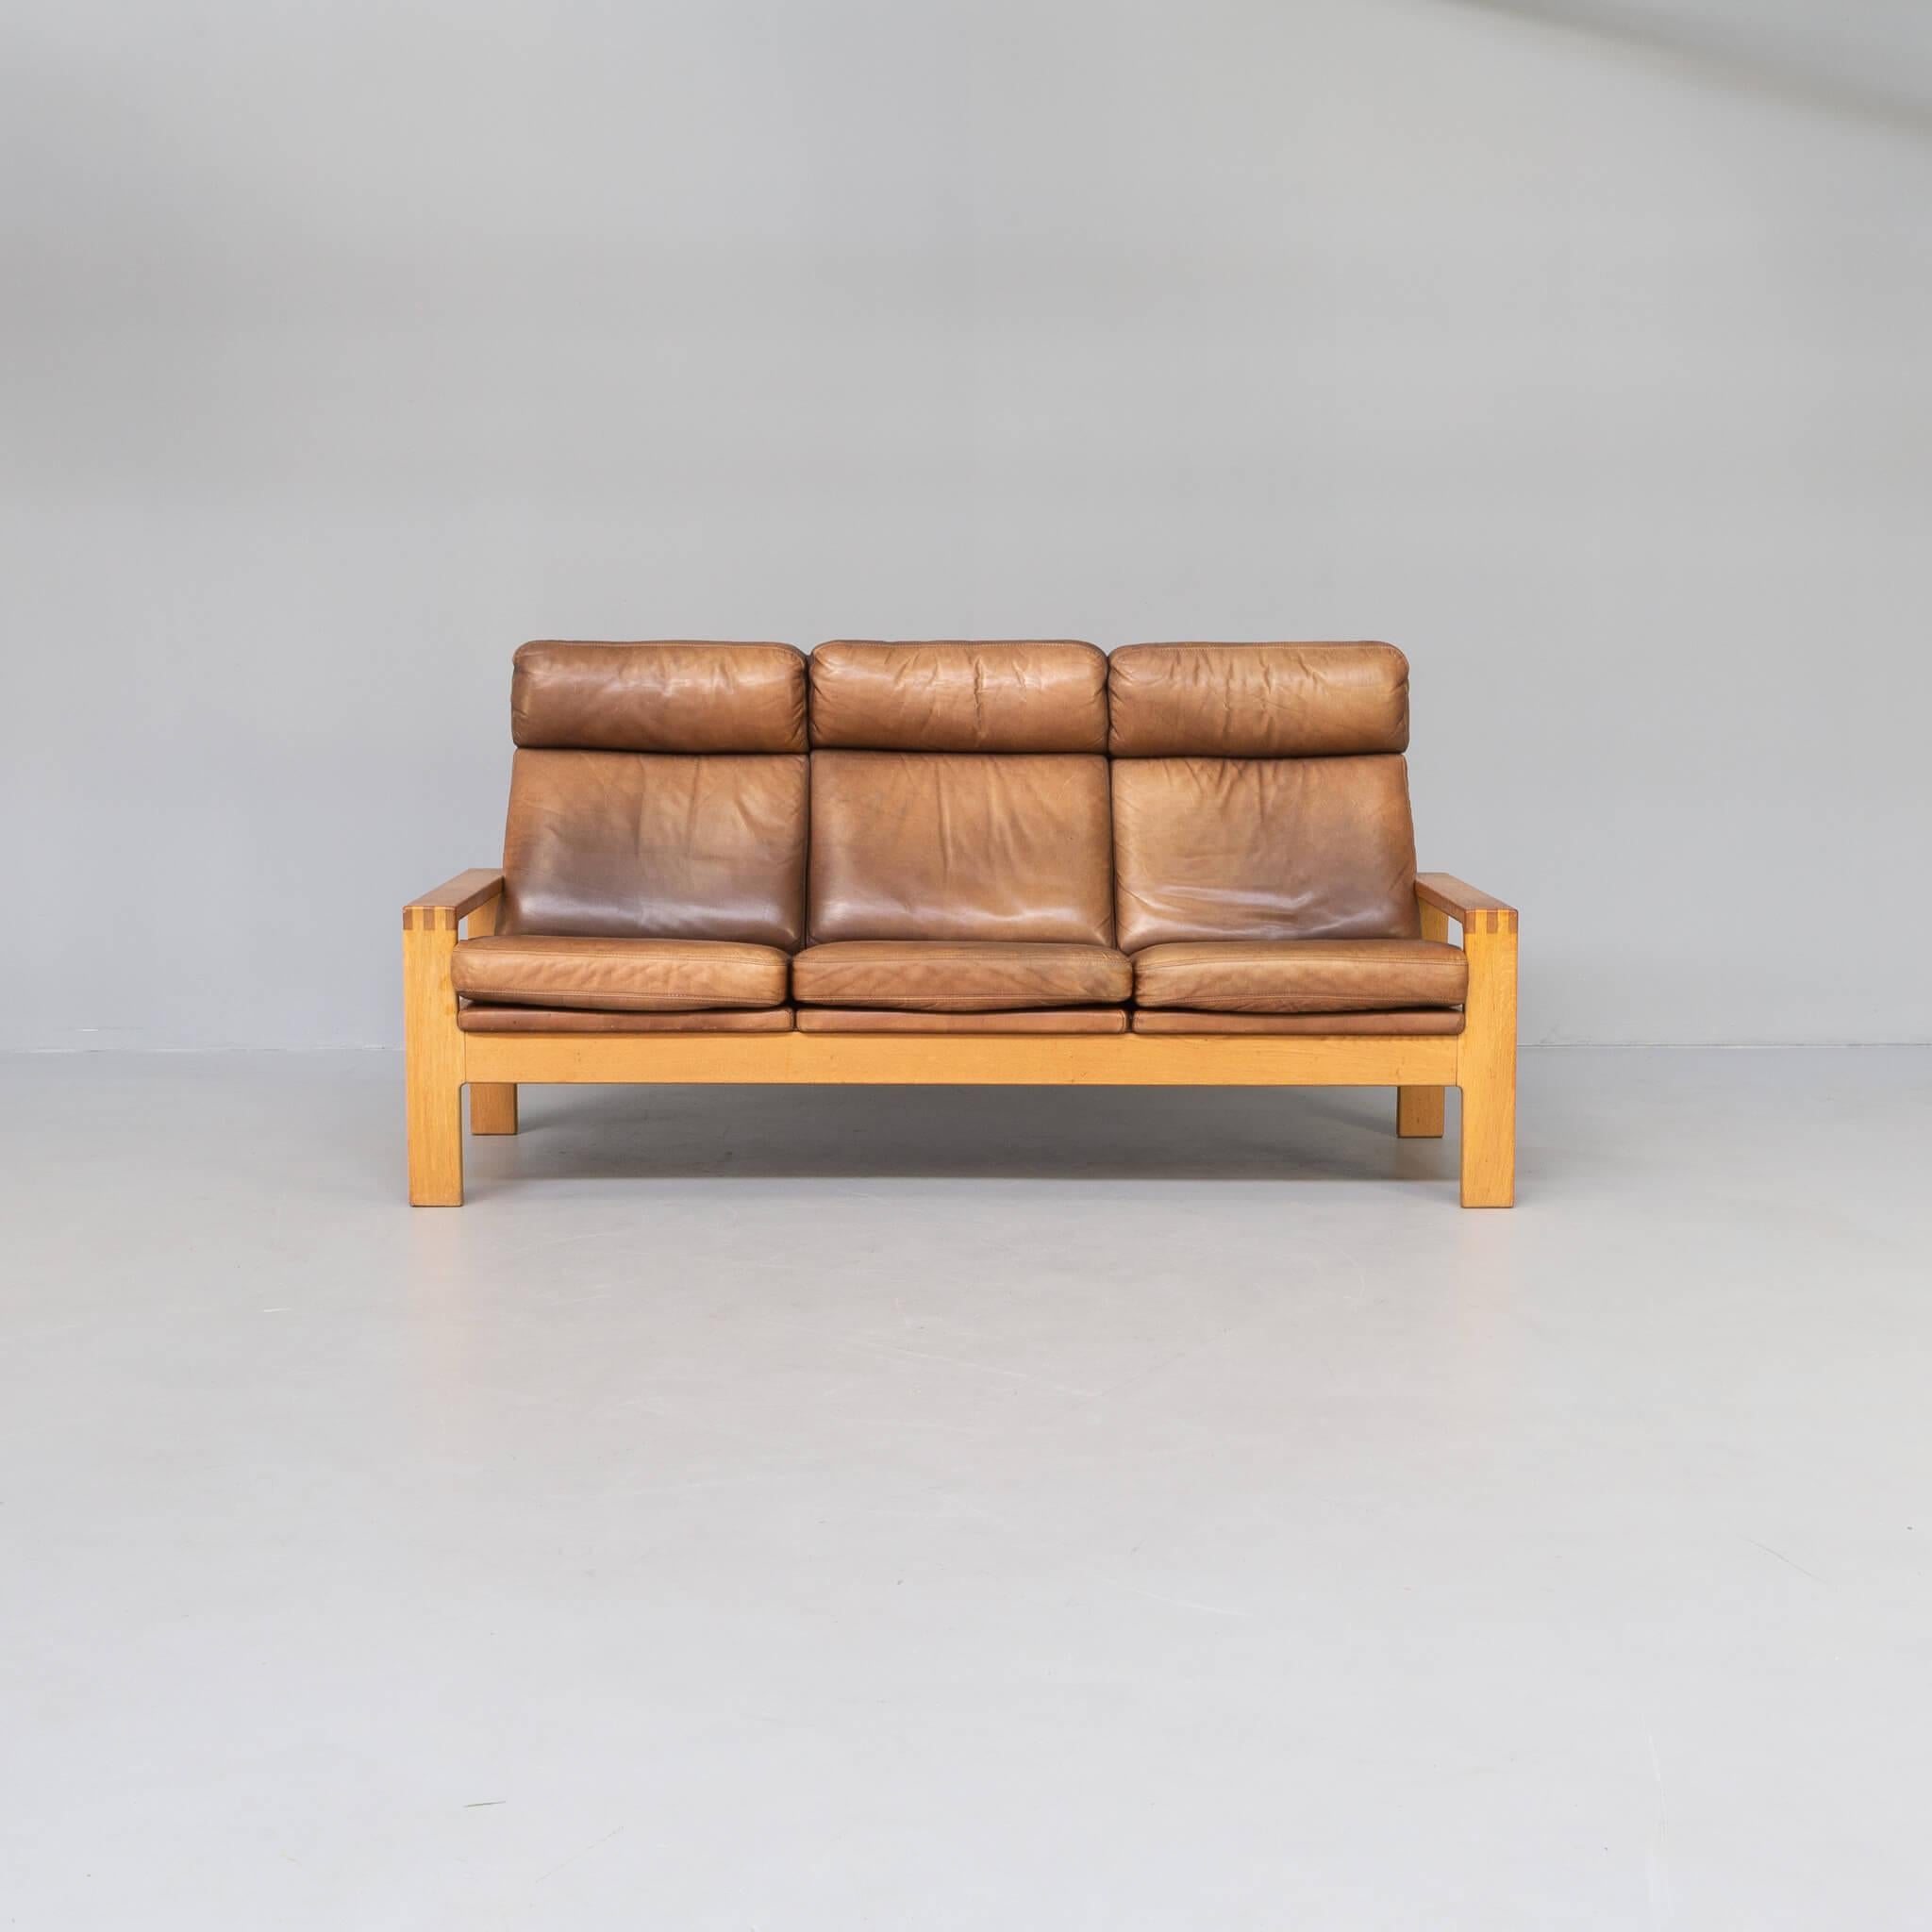 Designer Børge Mogensen was born in Aalborg, Denmark in 1914. He studied furniture design at the Copenhagen School of Arts and Crafts under esteemed Professor Kaare Klint from 1936–38. Next, he studied at the School of Furniture at the Royal Academy